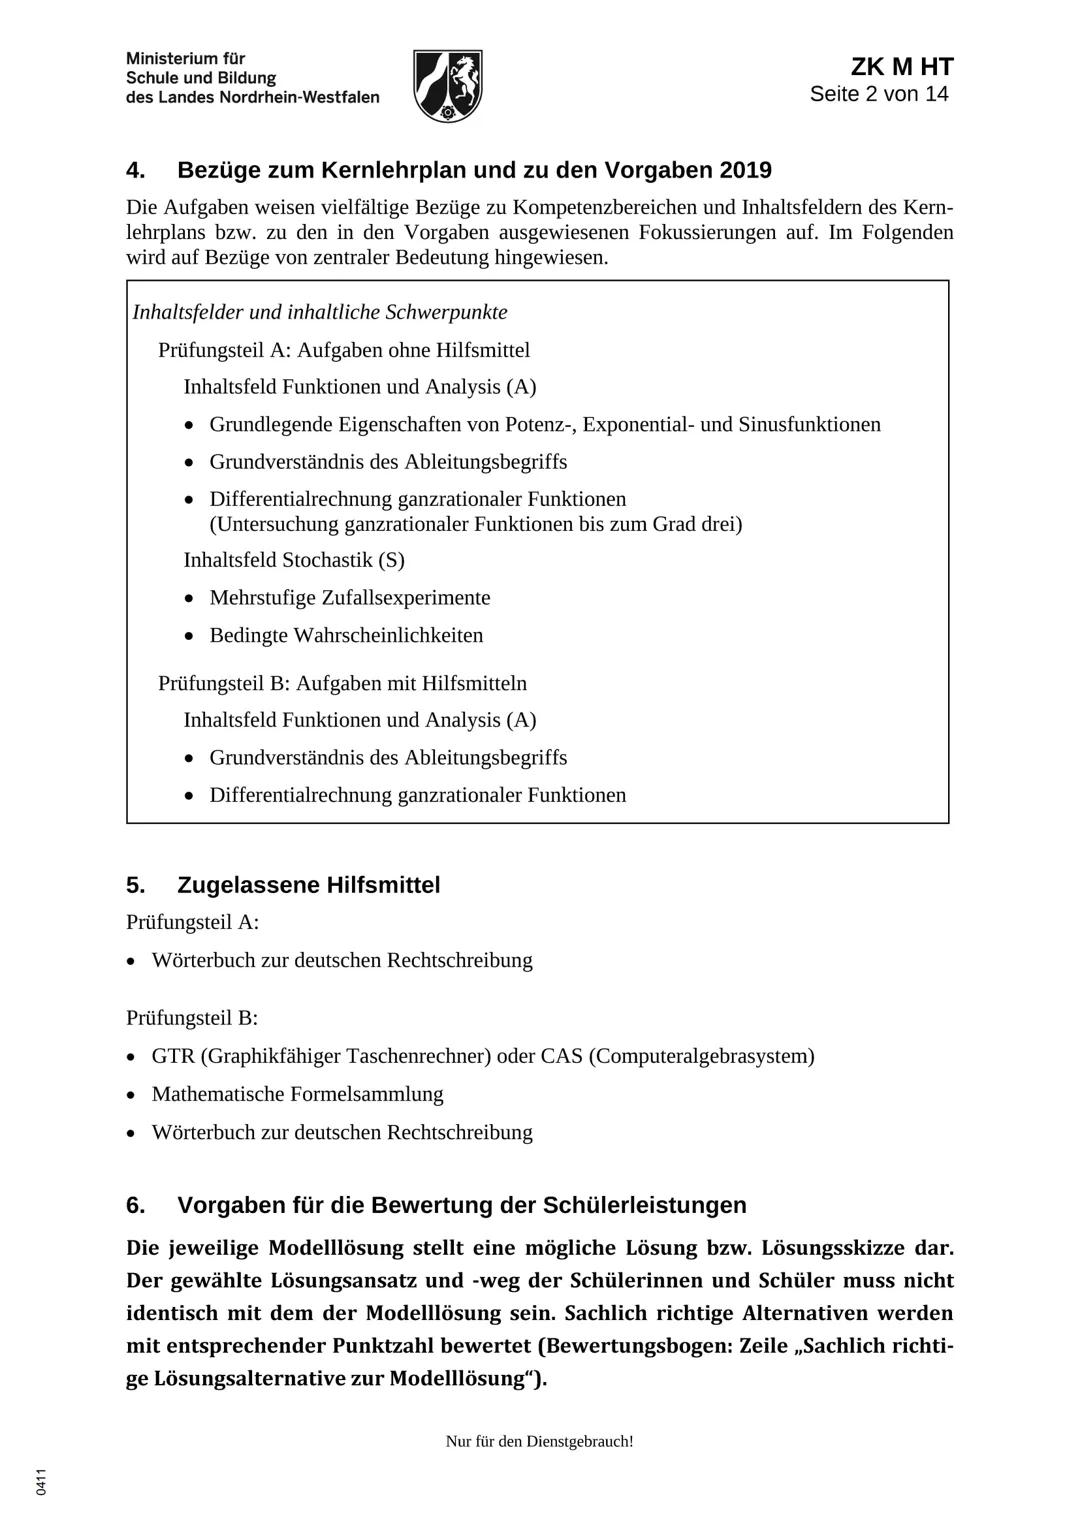 0411
Ministerium für
Schule und Bildung
des Landes Nordrhein-Westfalen
Name:
13
Zentrale Klausur am Ende der Einführungsphase
2019
Mathemati